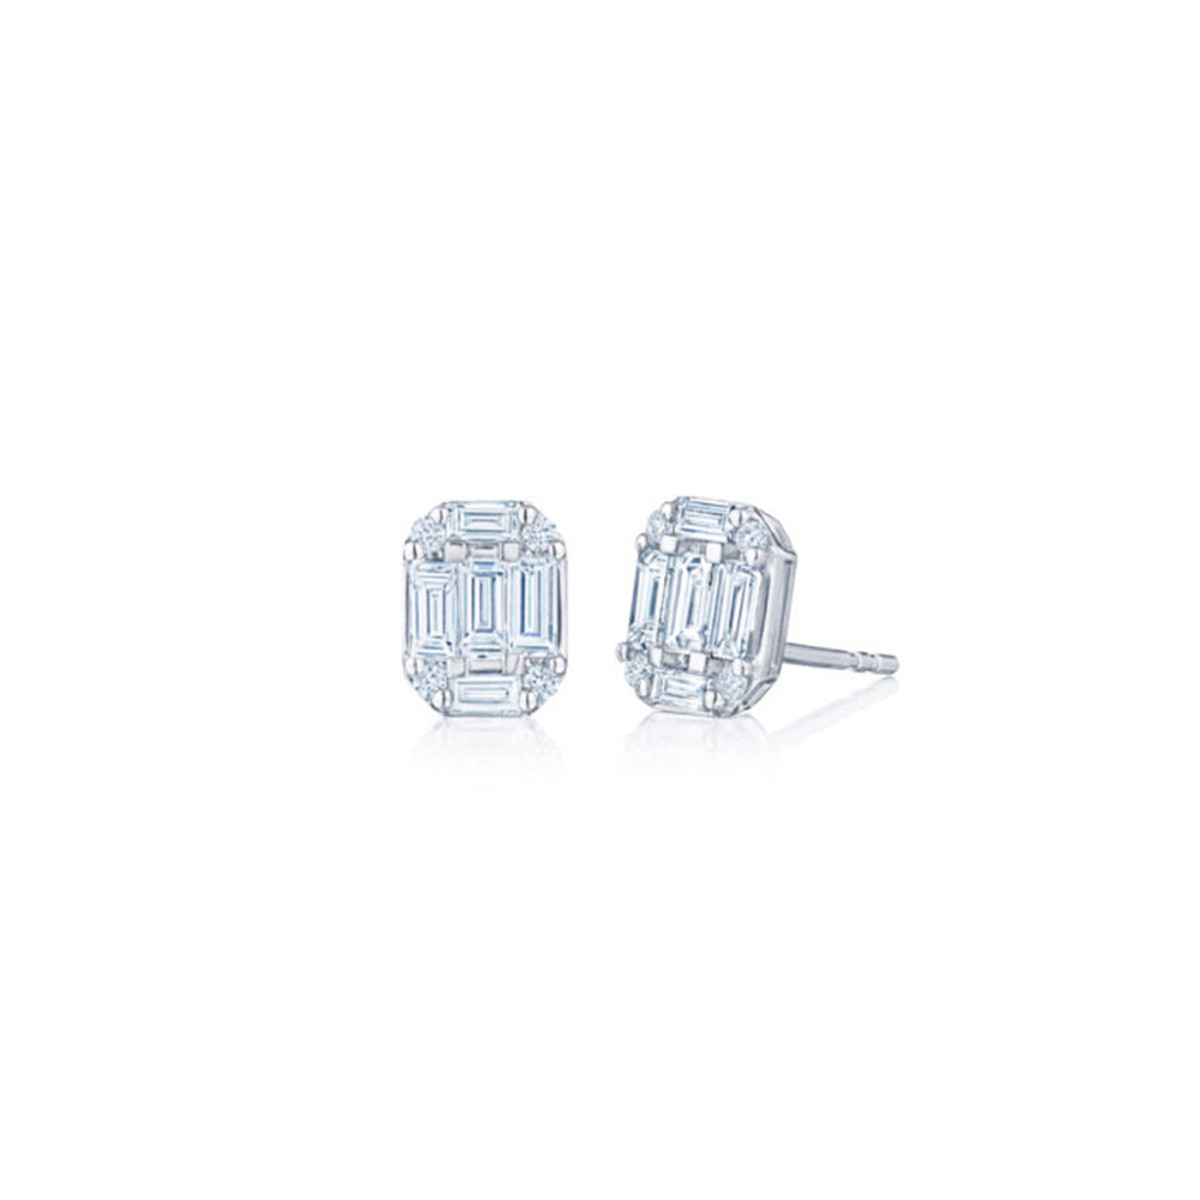 Kwiat 18K White Gold Sunburst Emerald Cut Diamond Stud Earrings-51838